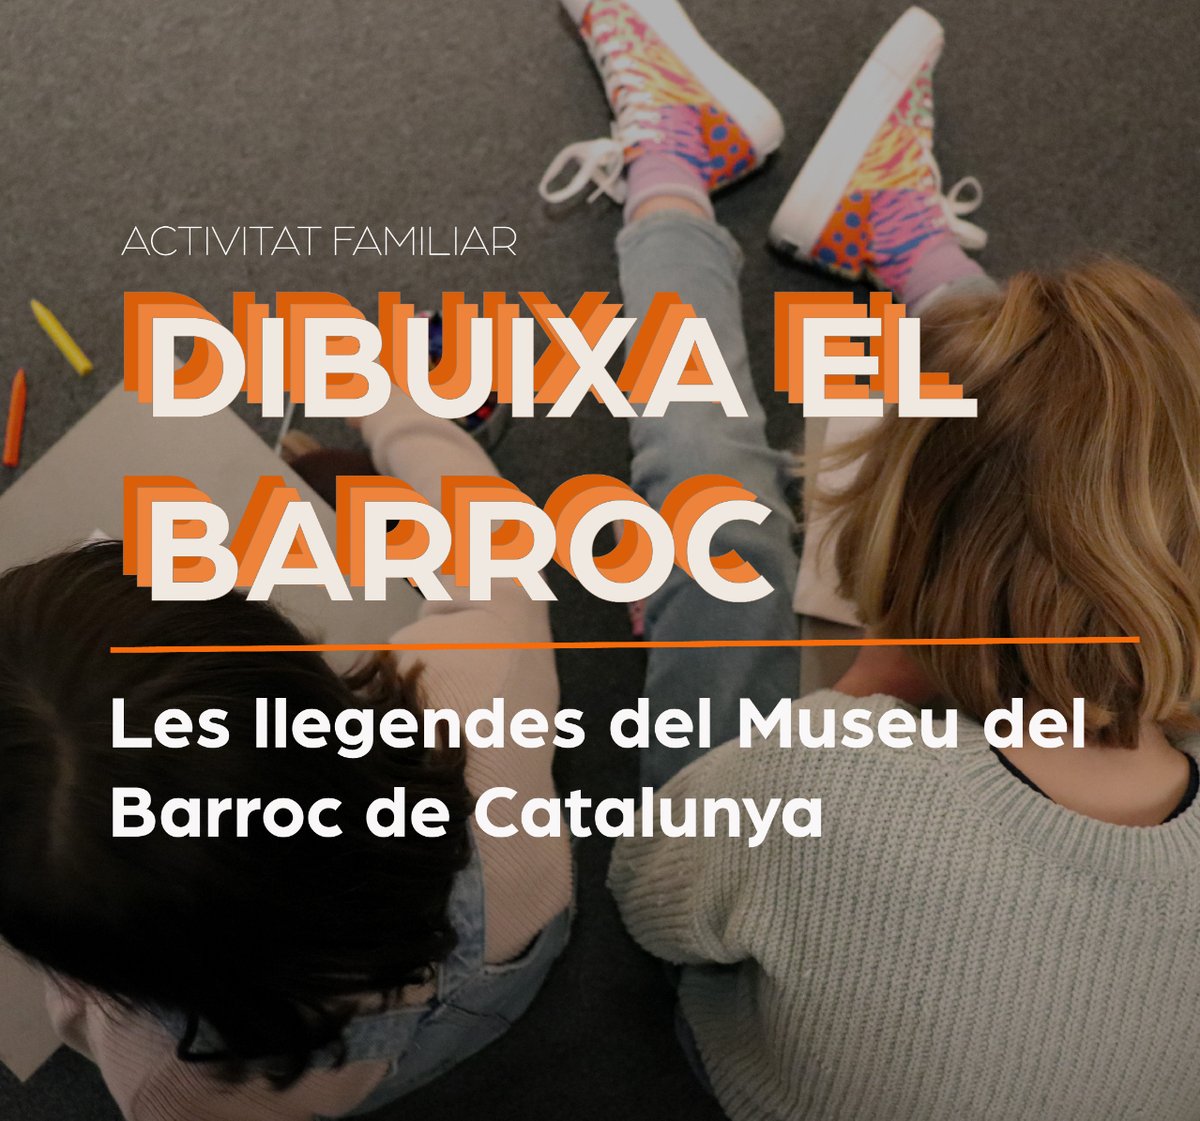 🫶Us volem proposar la primera activitat familiar del #MuseudelBarroc de Catalunya!

🎨 En la que transformarem un full en un llibre que omplirem de dibuixos, tot escoltant les històries que amaguen les pintures, els retaules i les escultures del museu.